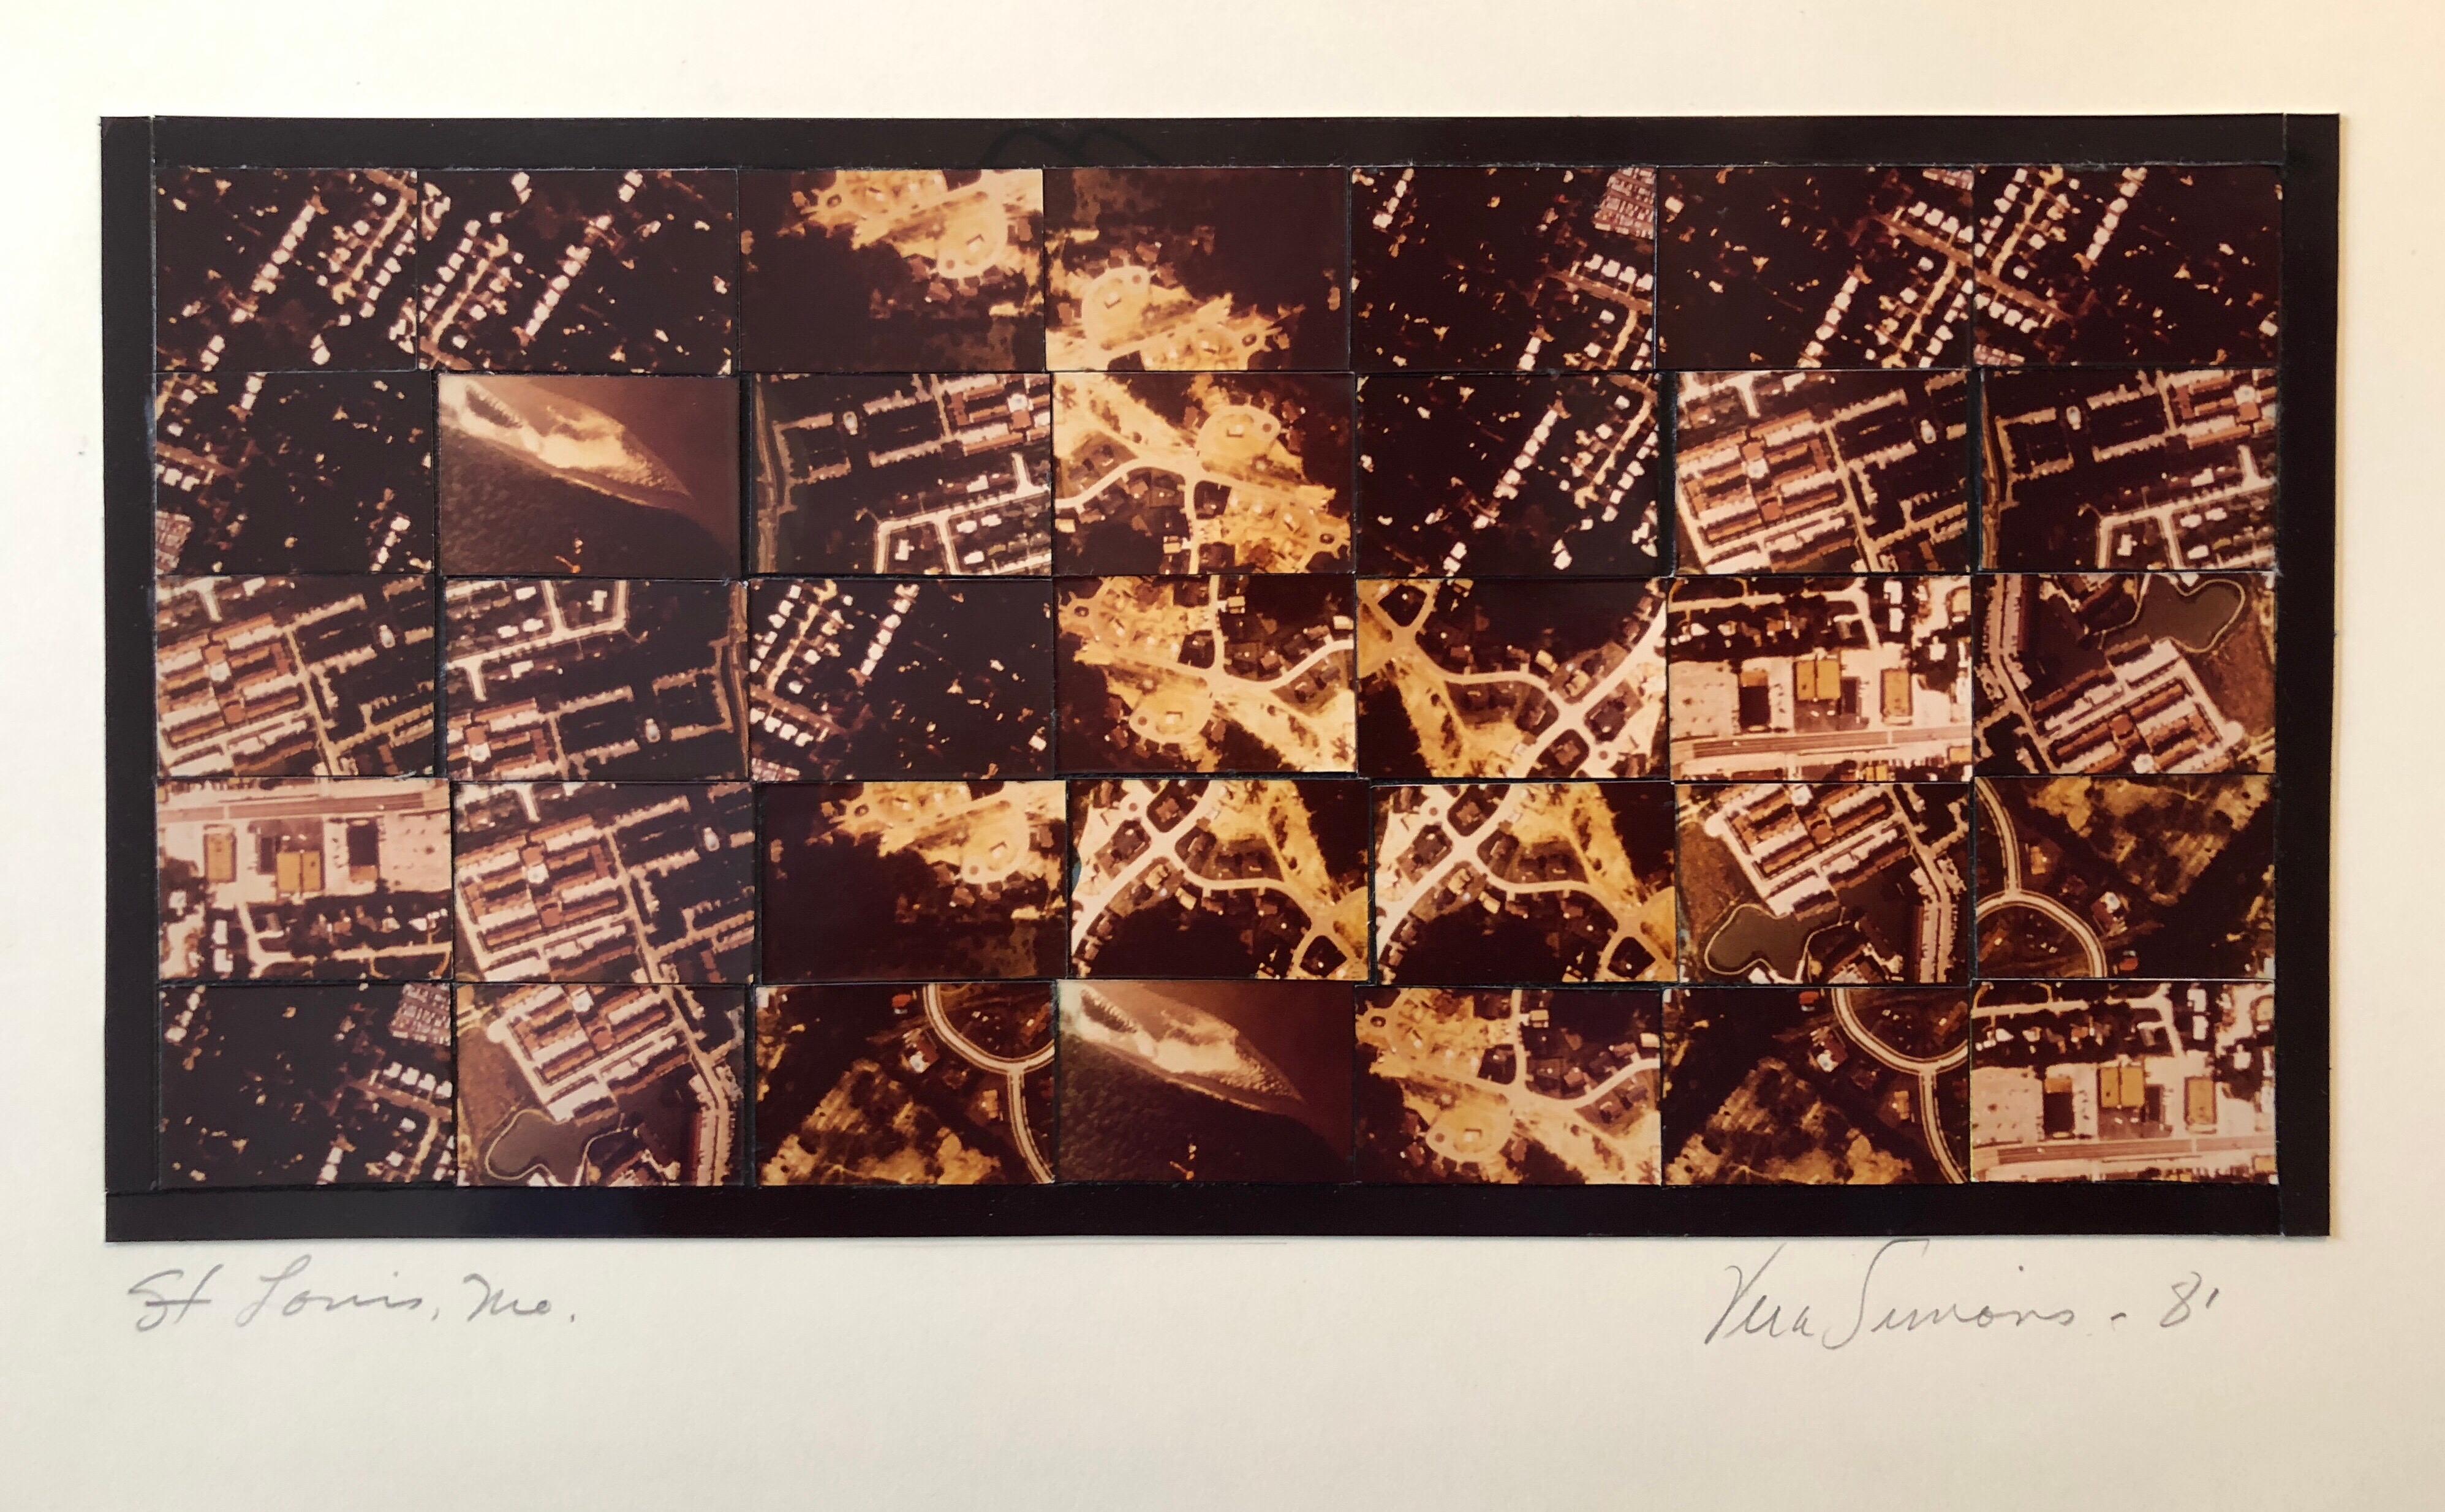  Photographie aérienne avec collage de mosaïque photographique de la St Louis MO, Femme aviatrice féministe